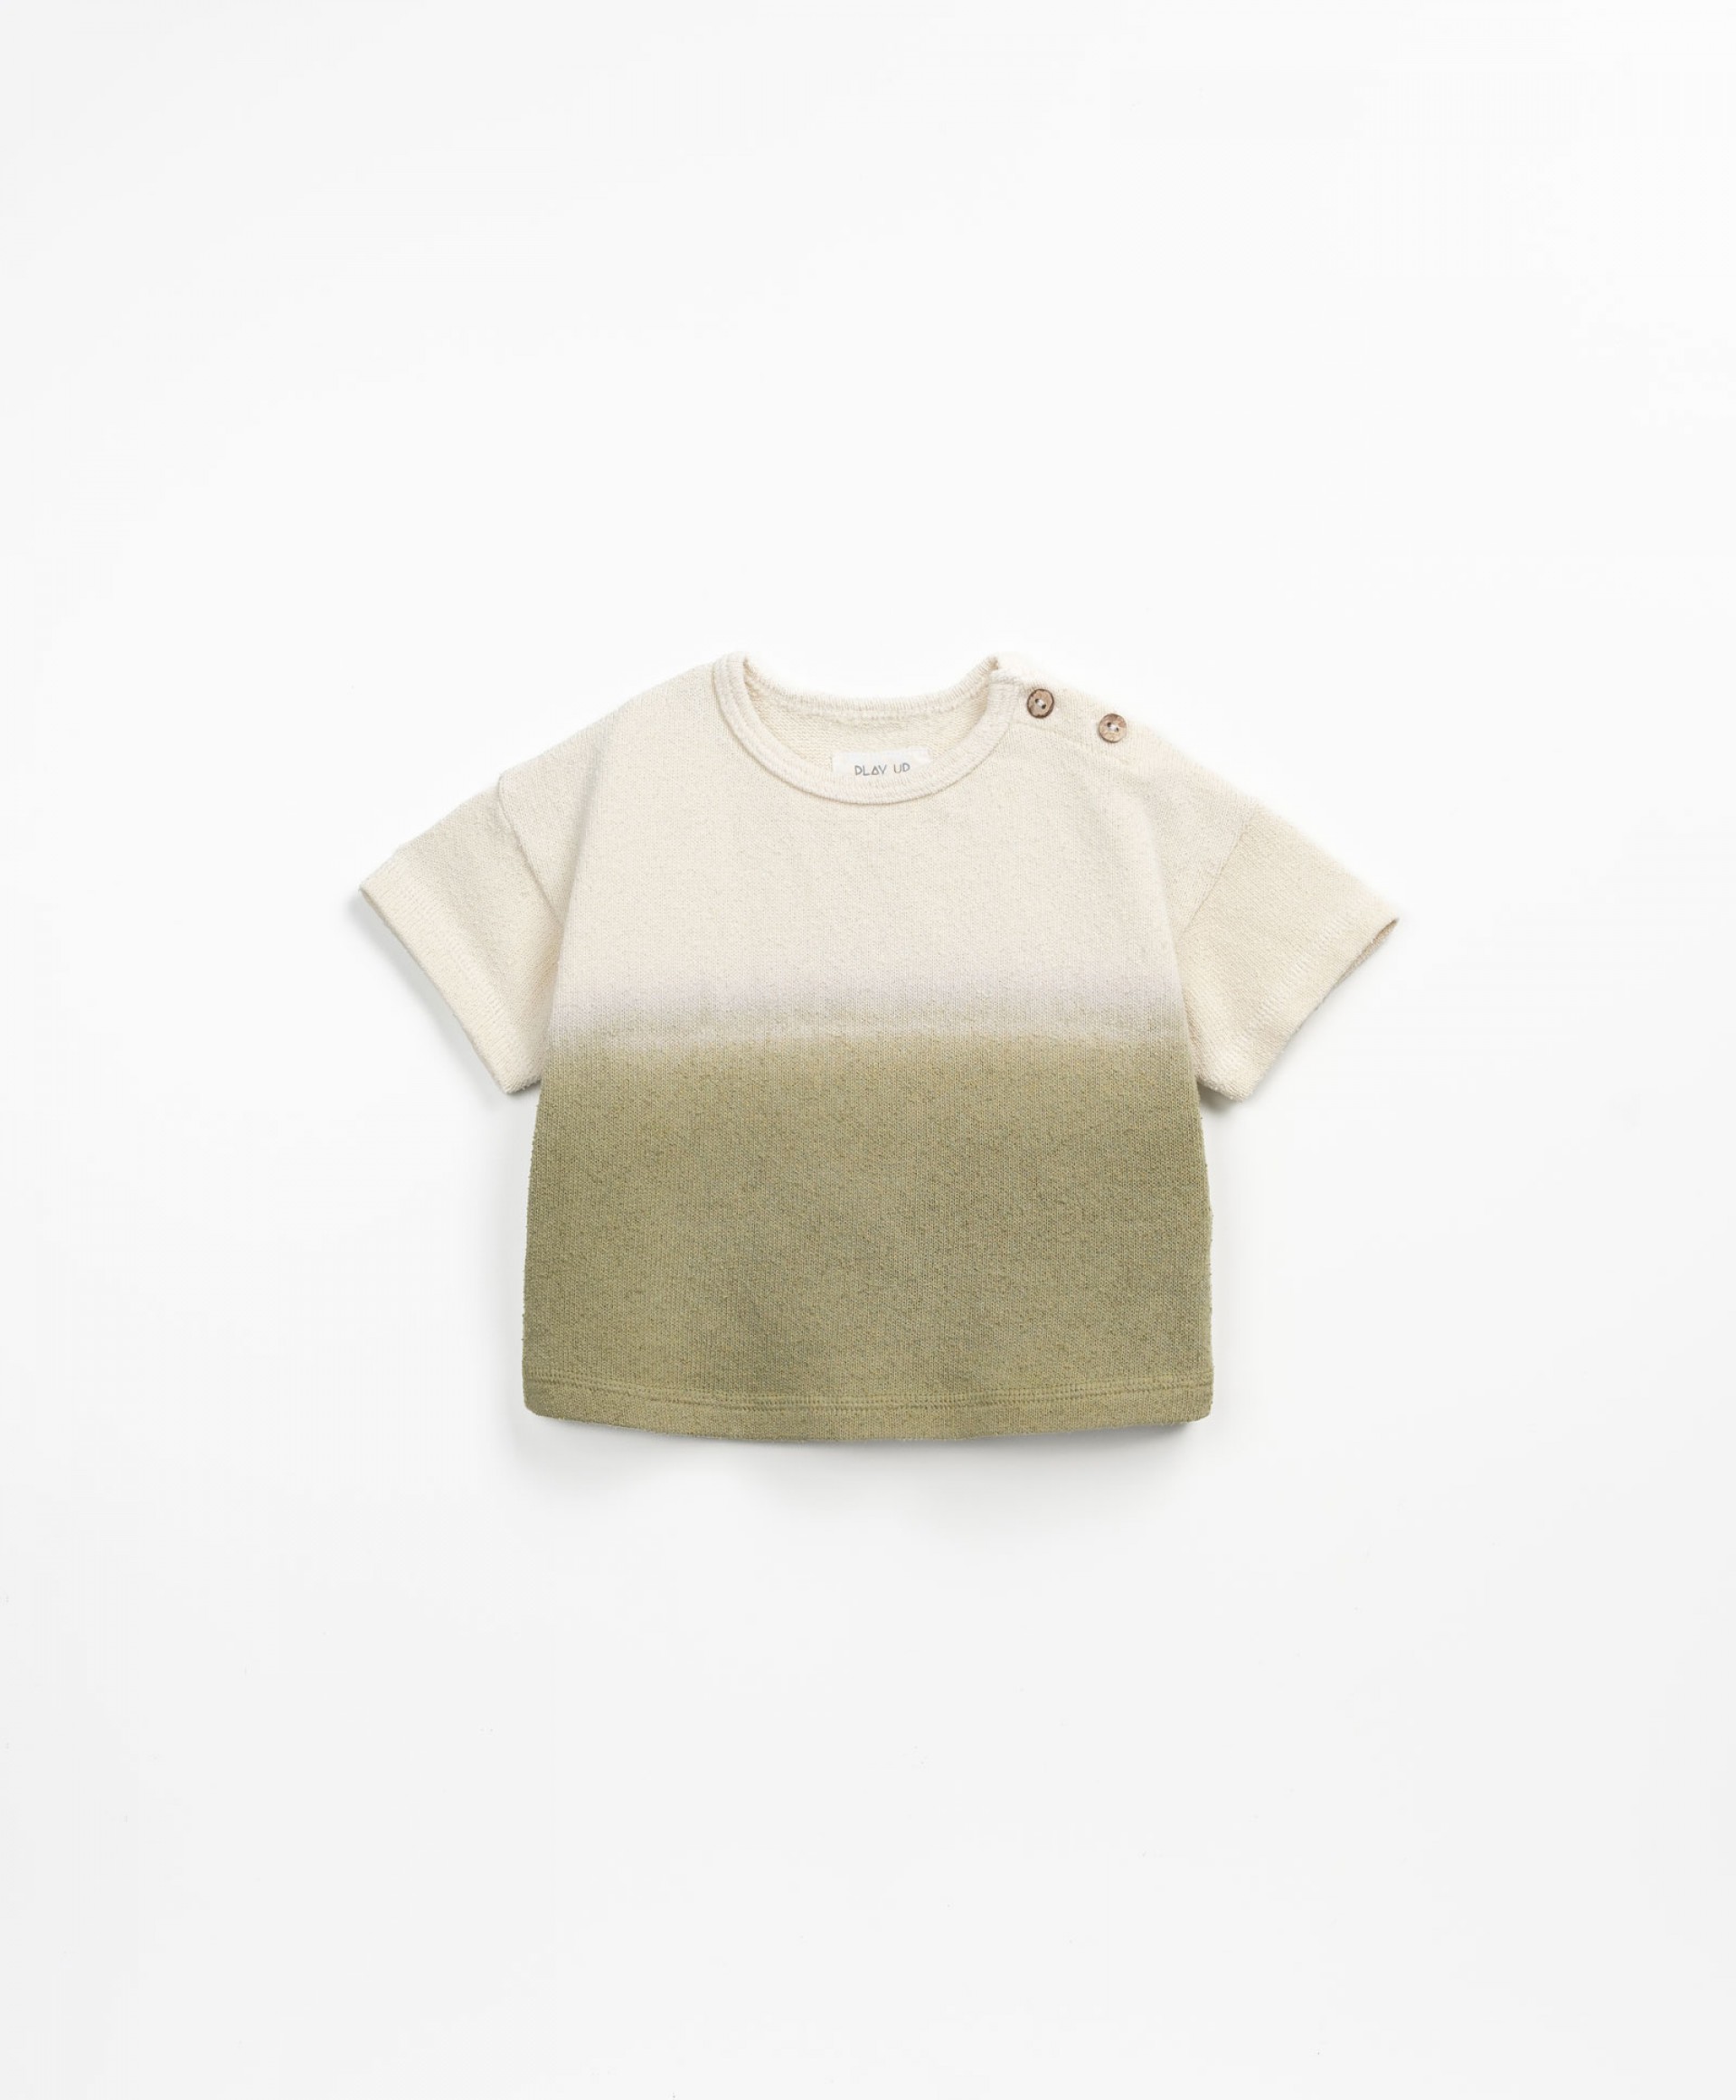 T-shirt com gradiente de cor | Textile Art